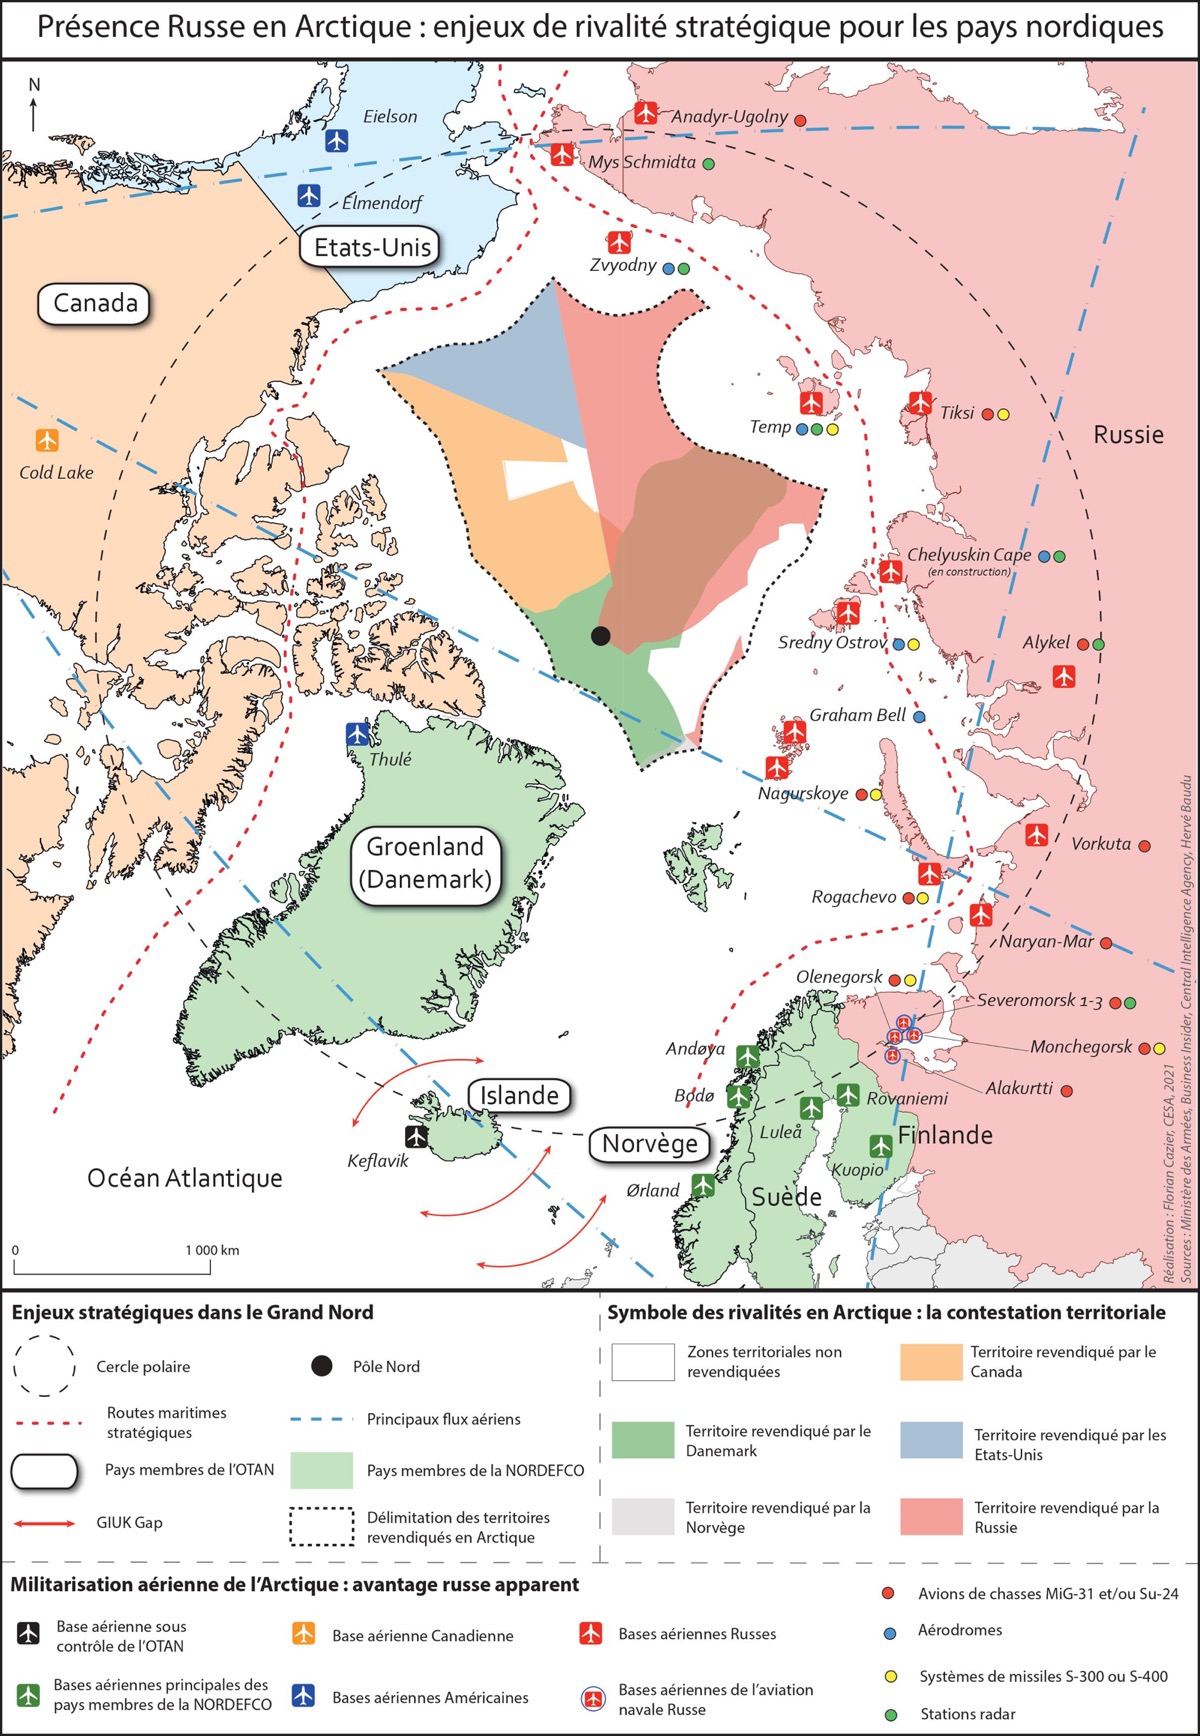 Puissance aérienne et pays nordiques : entre enjeux stratégiques en Arctique et tensions géopolitiques dans la région Baltique